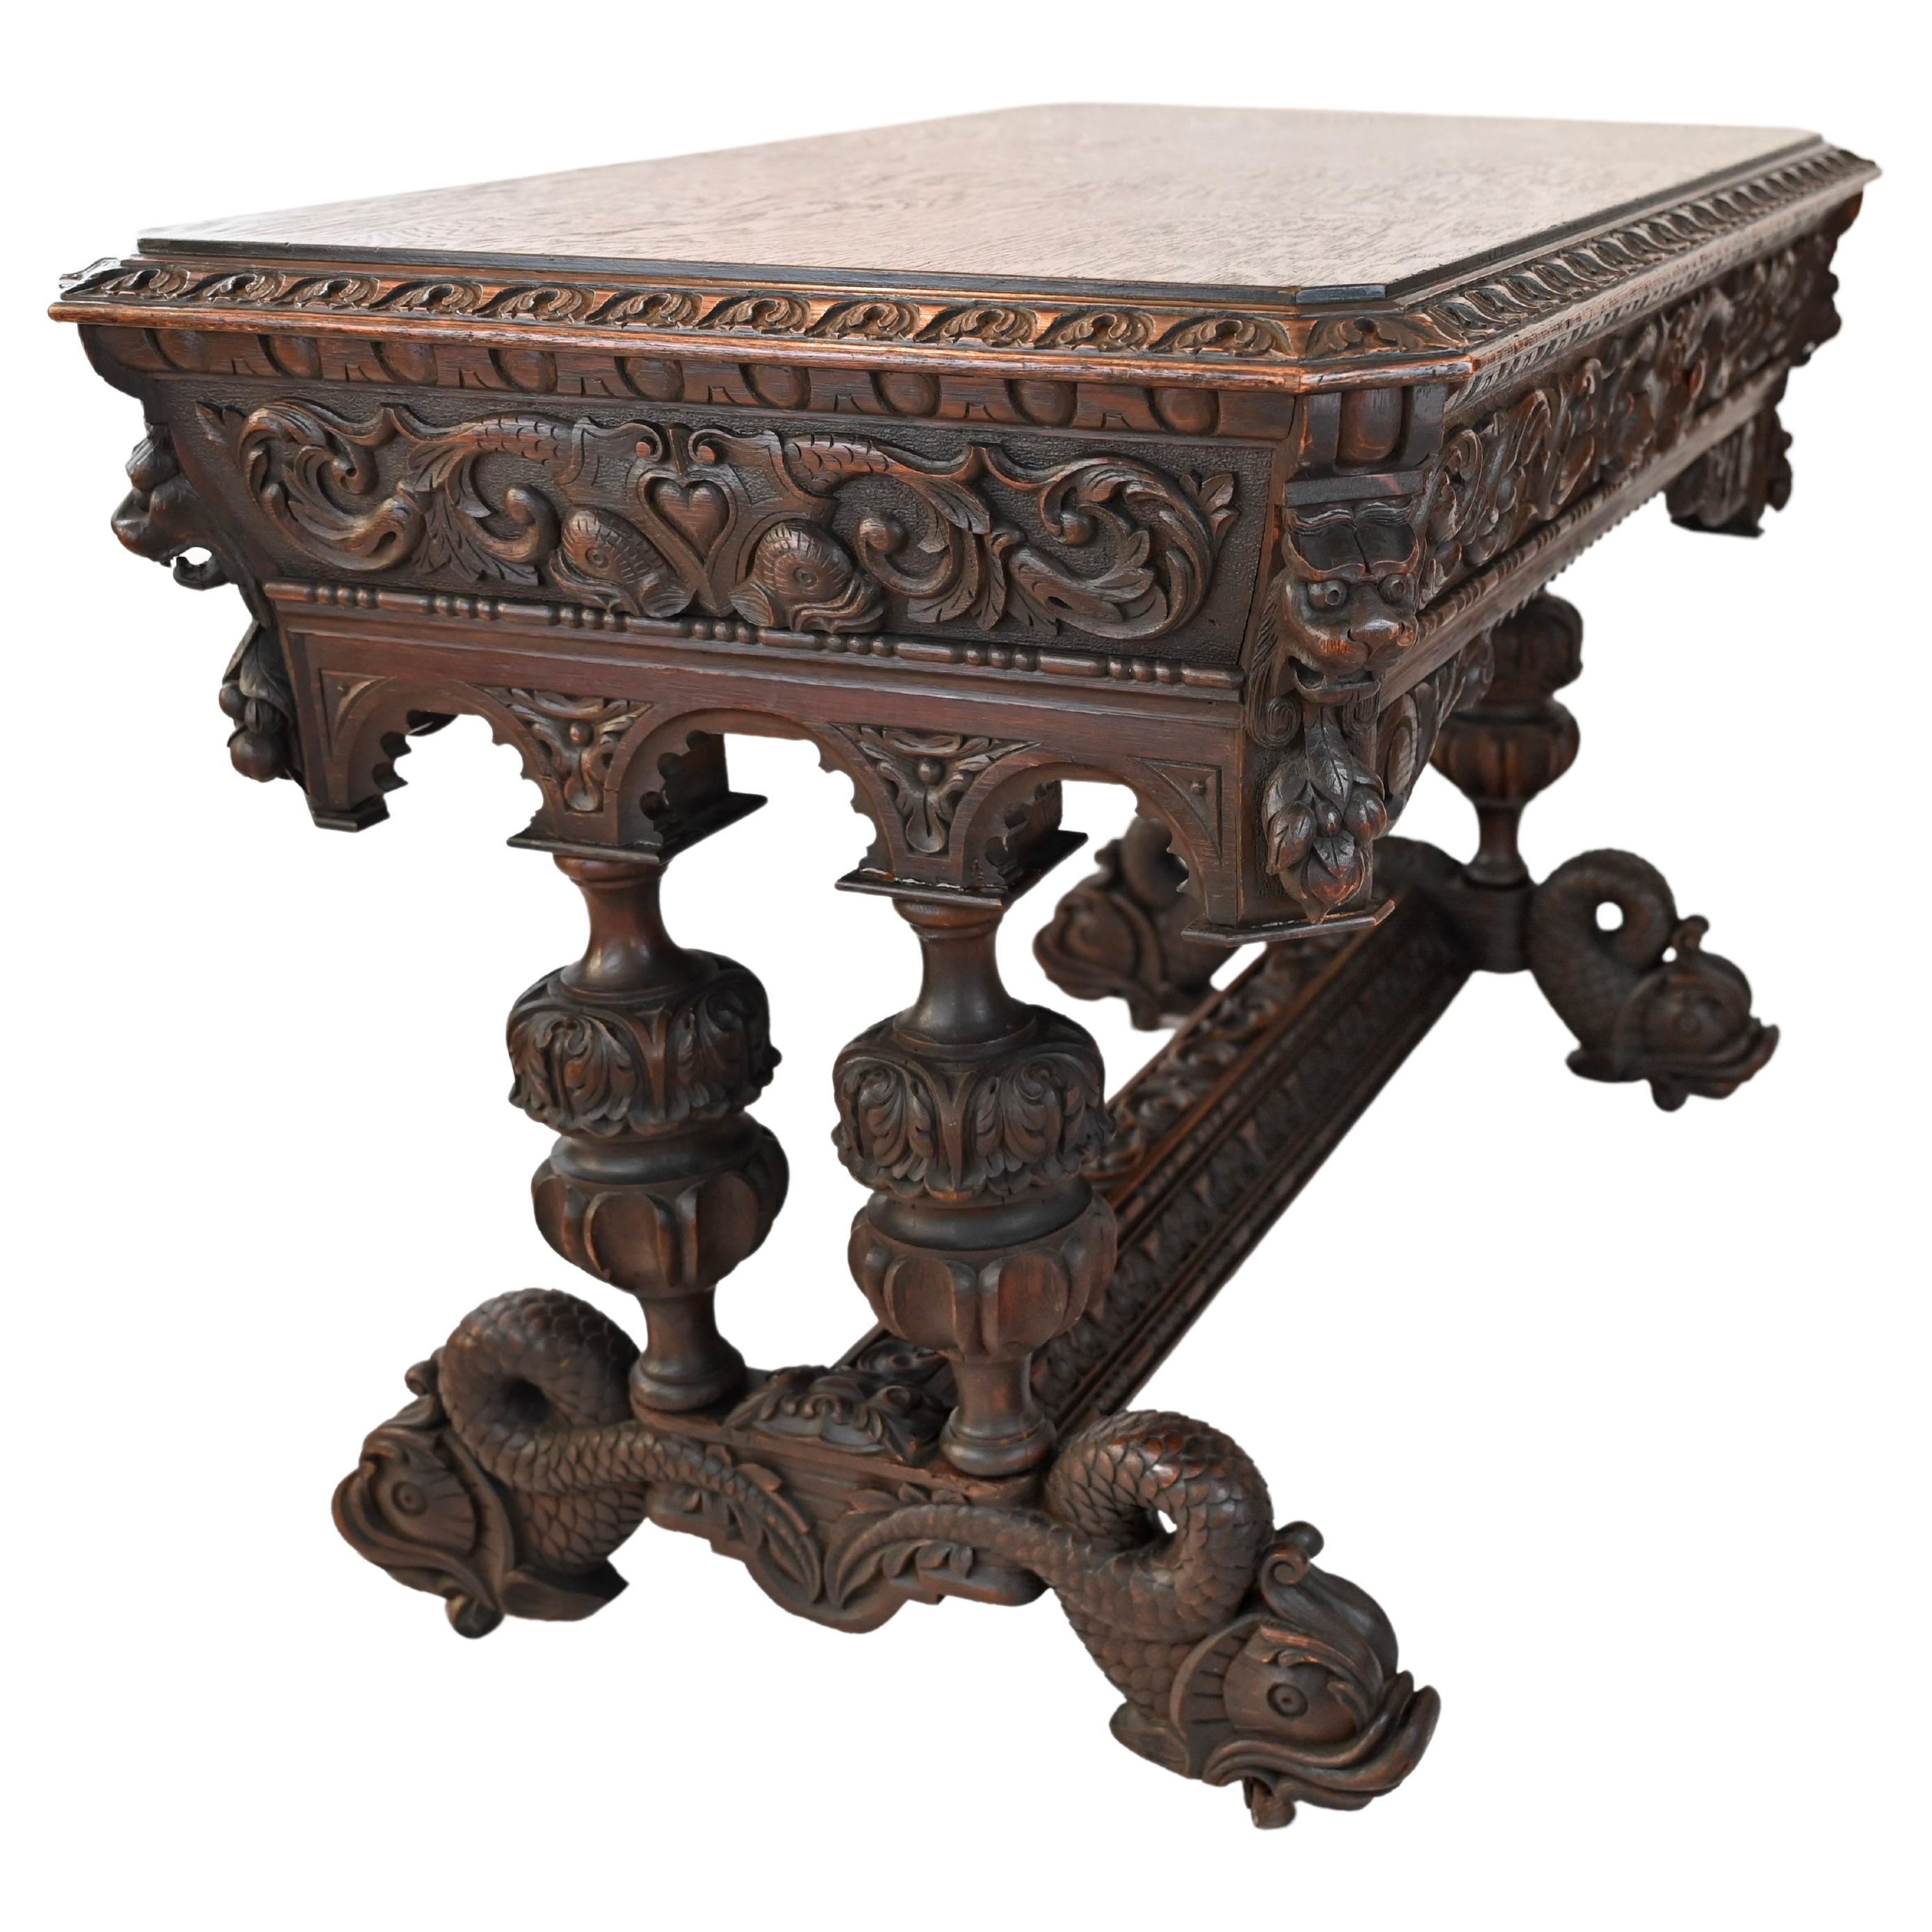 Table ou bureau en chêne sculpté du 19ème siècle de style gothique Renaissance